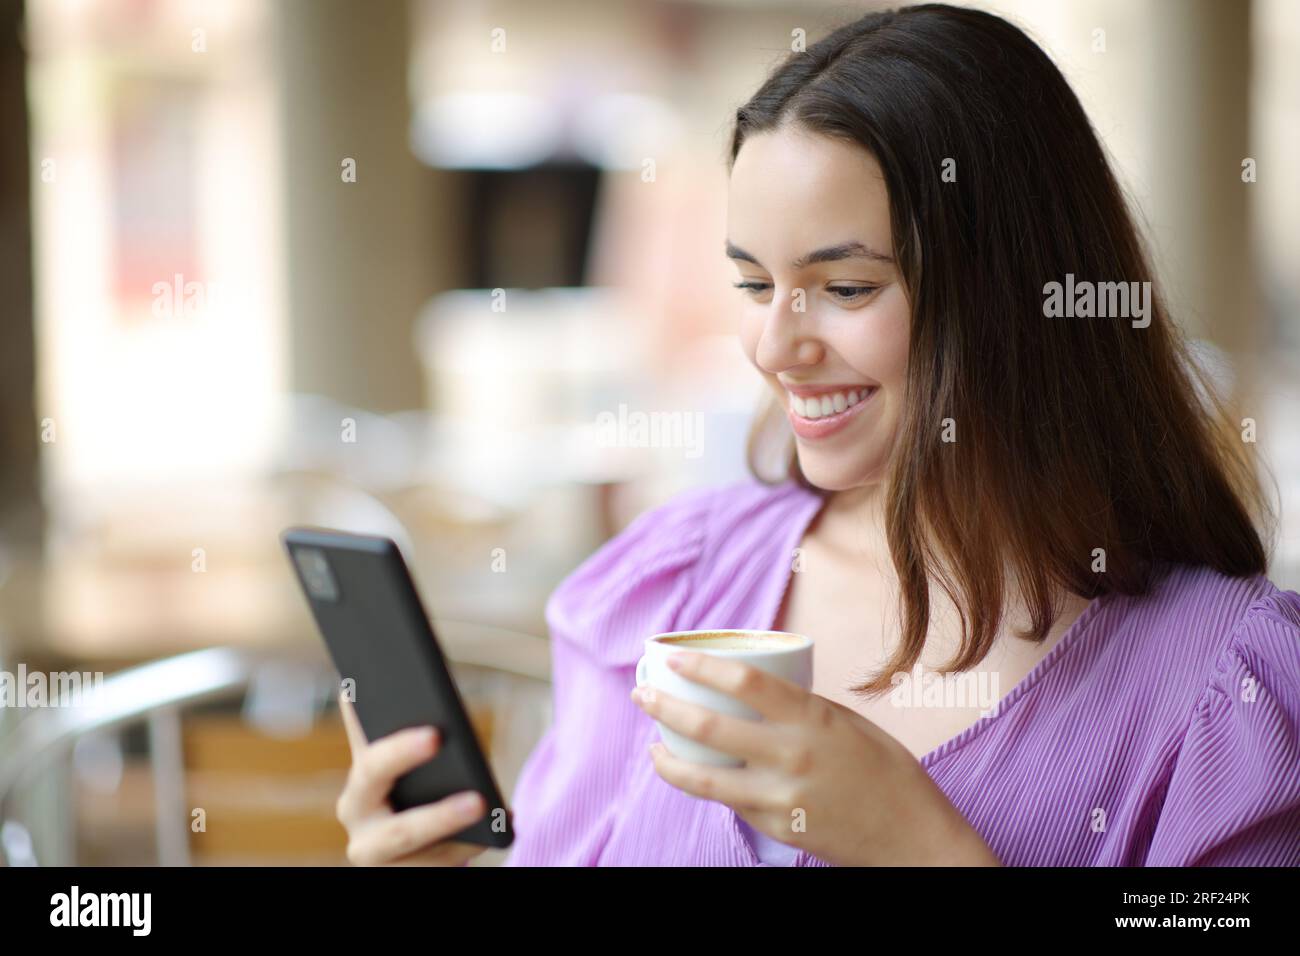 Una donna felice che controlla il telefono cellulare e sorride in una terrazza del bar Foto Stock